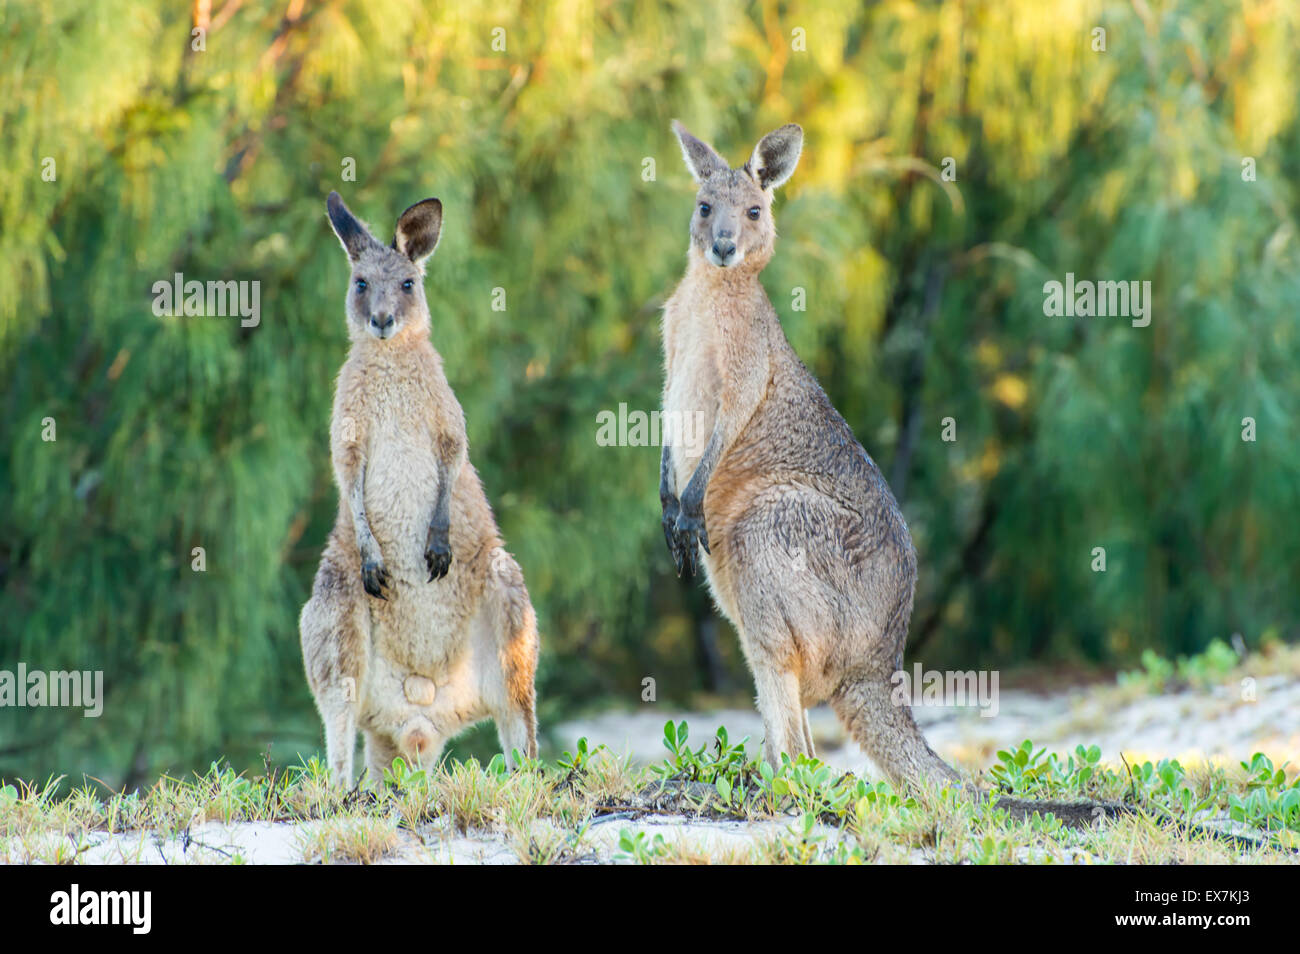 female kangaroo among coastal scrub Stock Photo